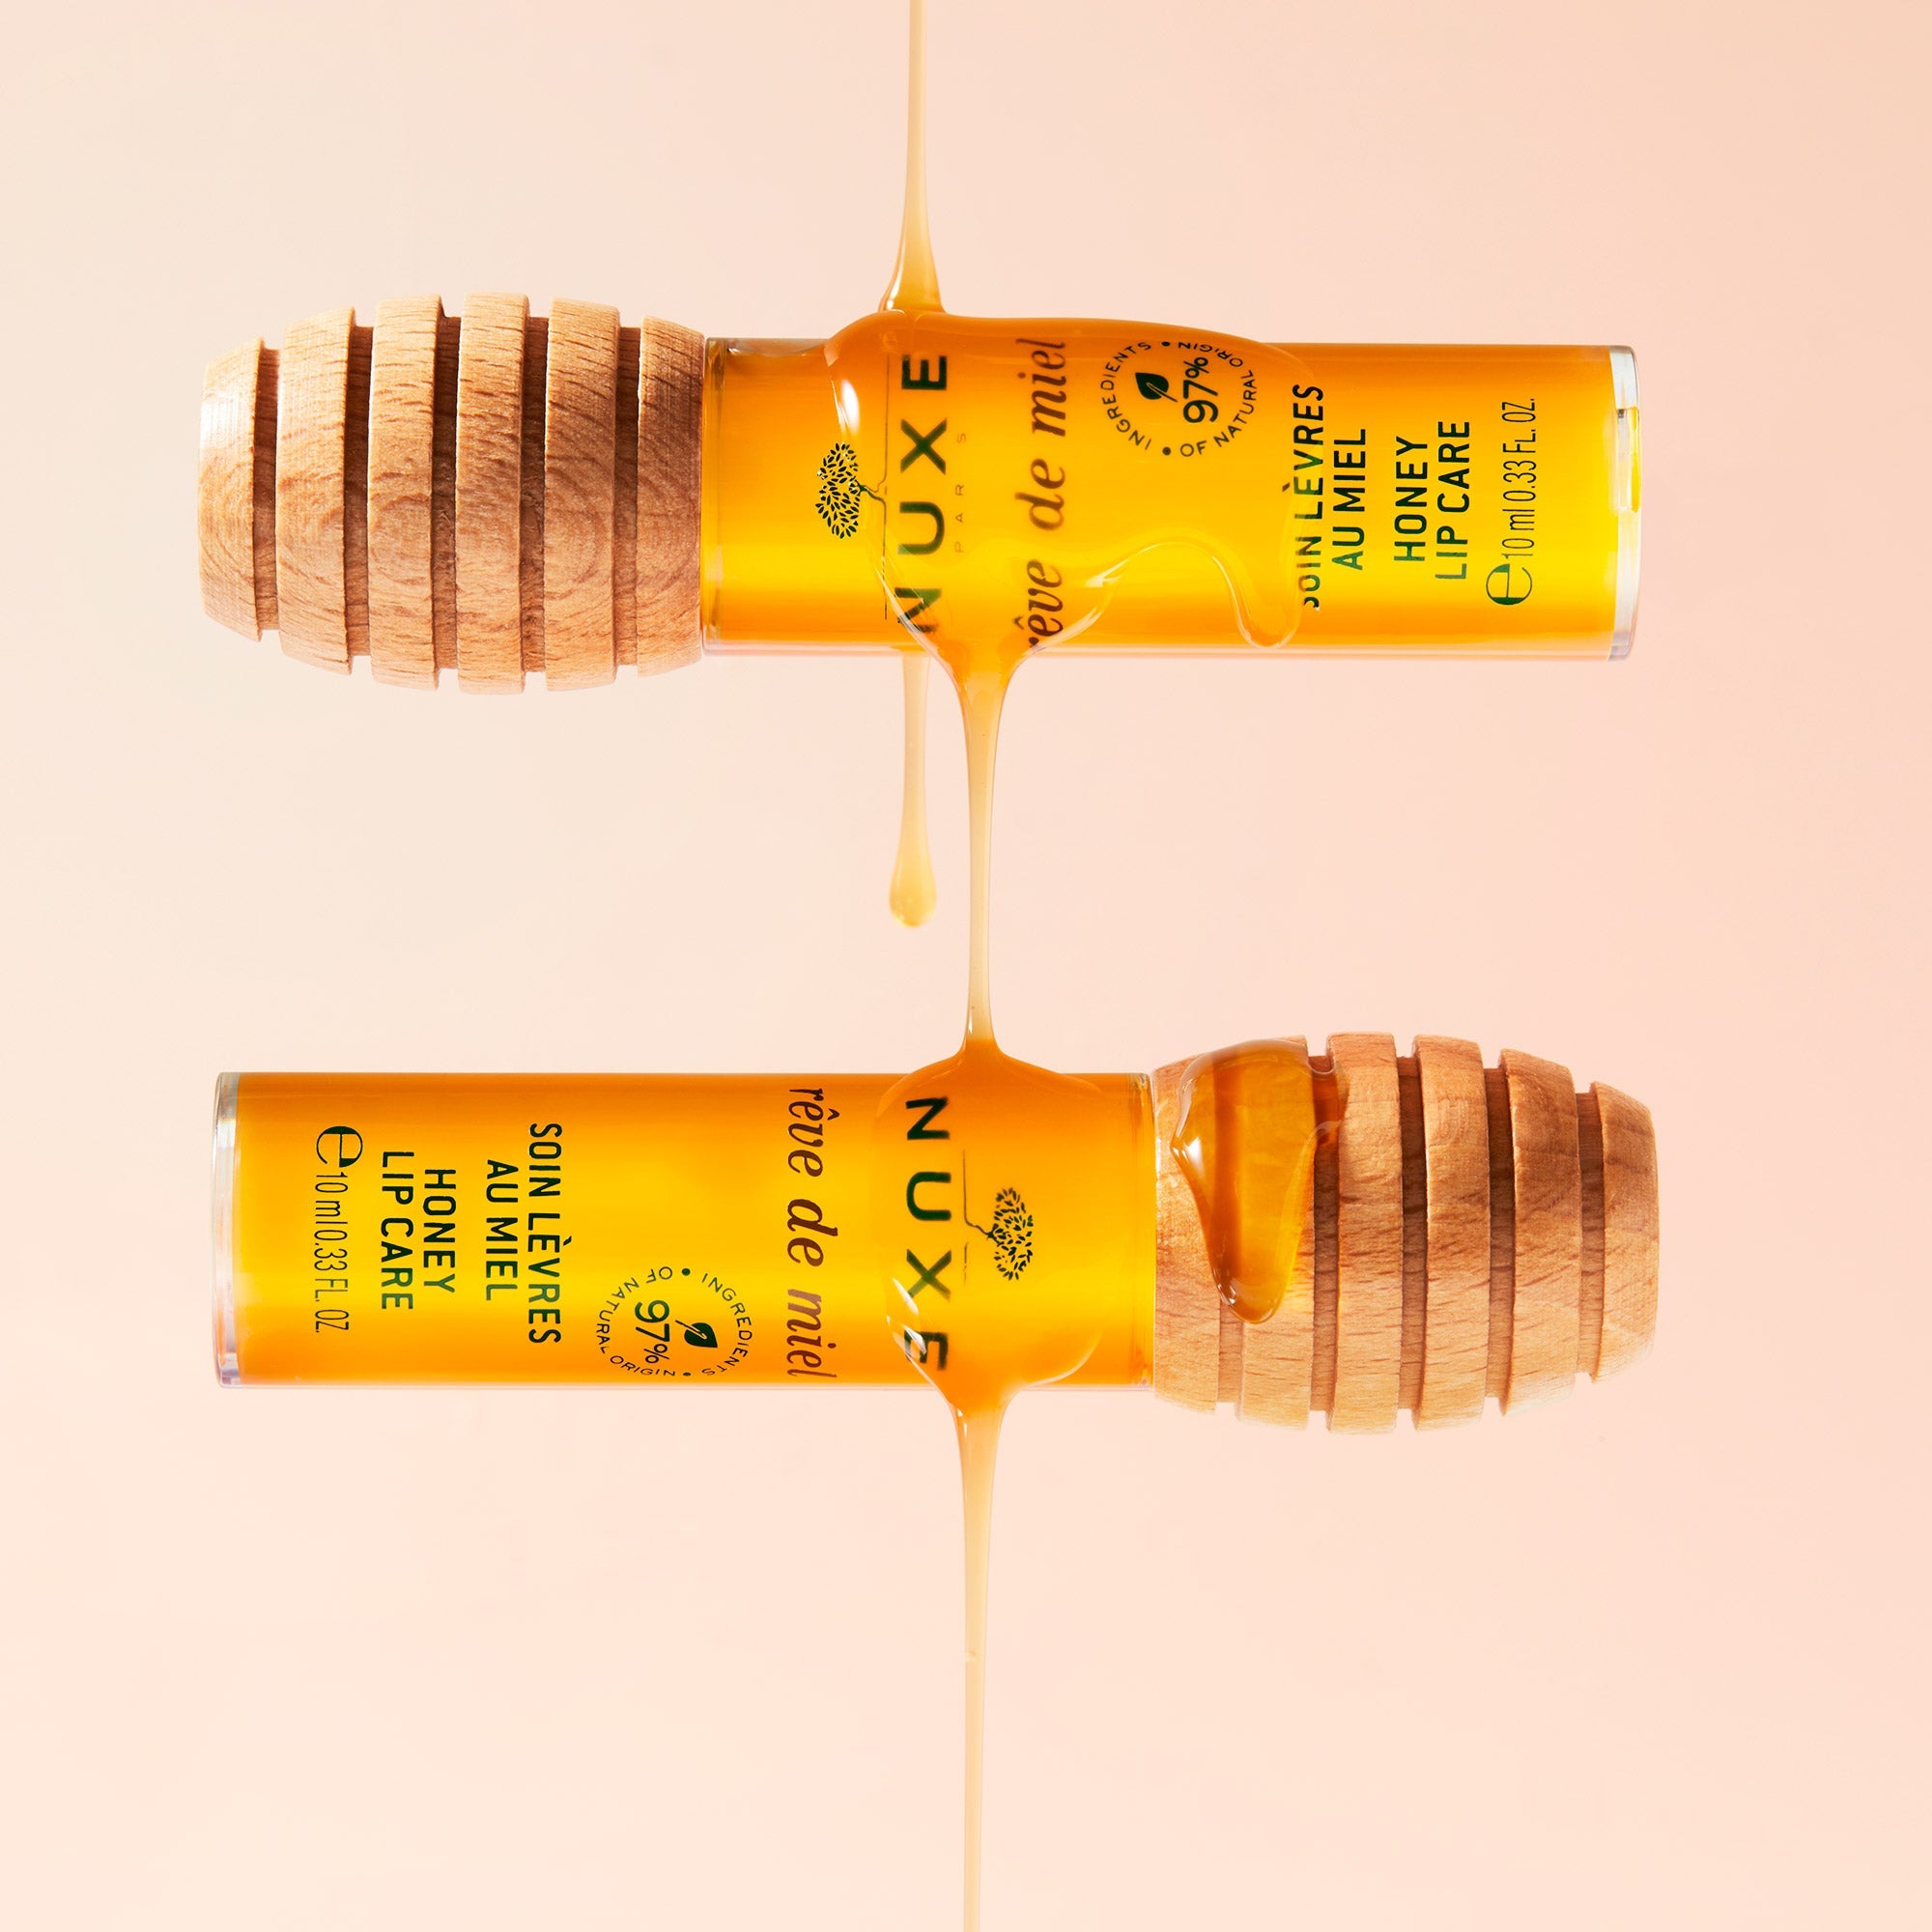 Nuxe Reve de Miel Honey Lip Care 10 ml